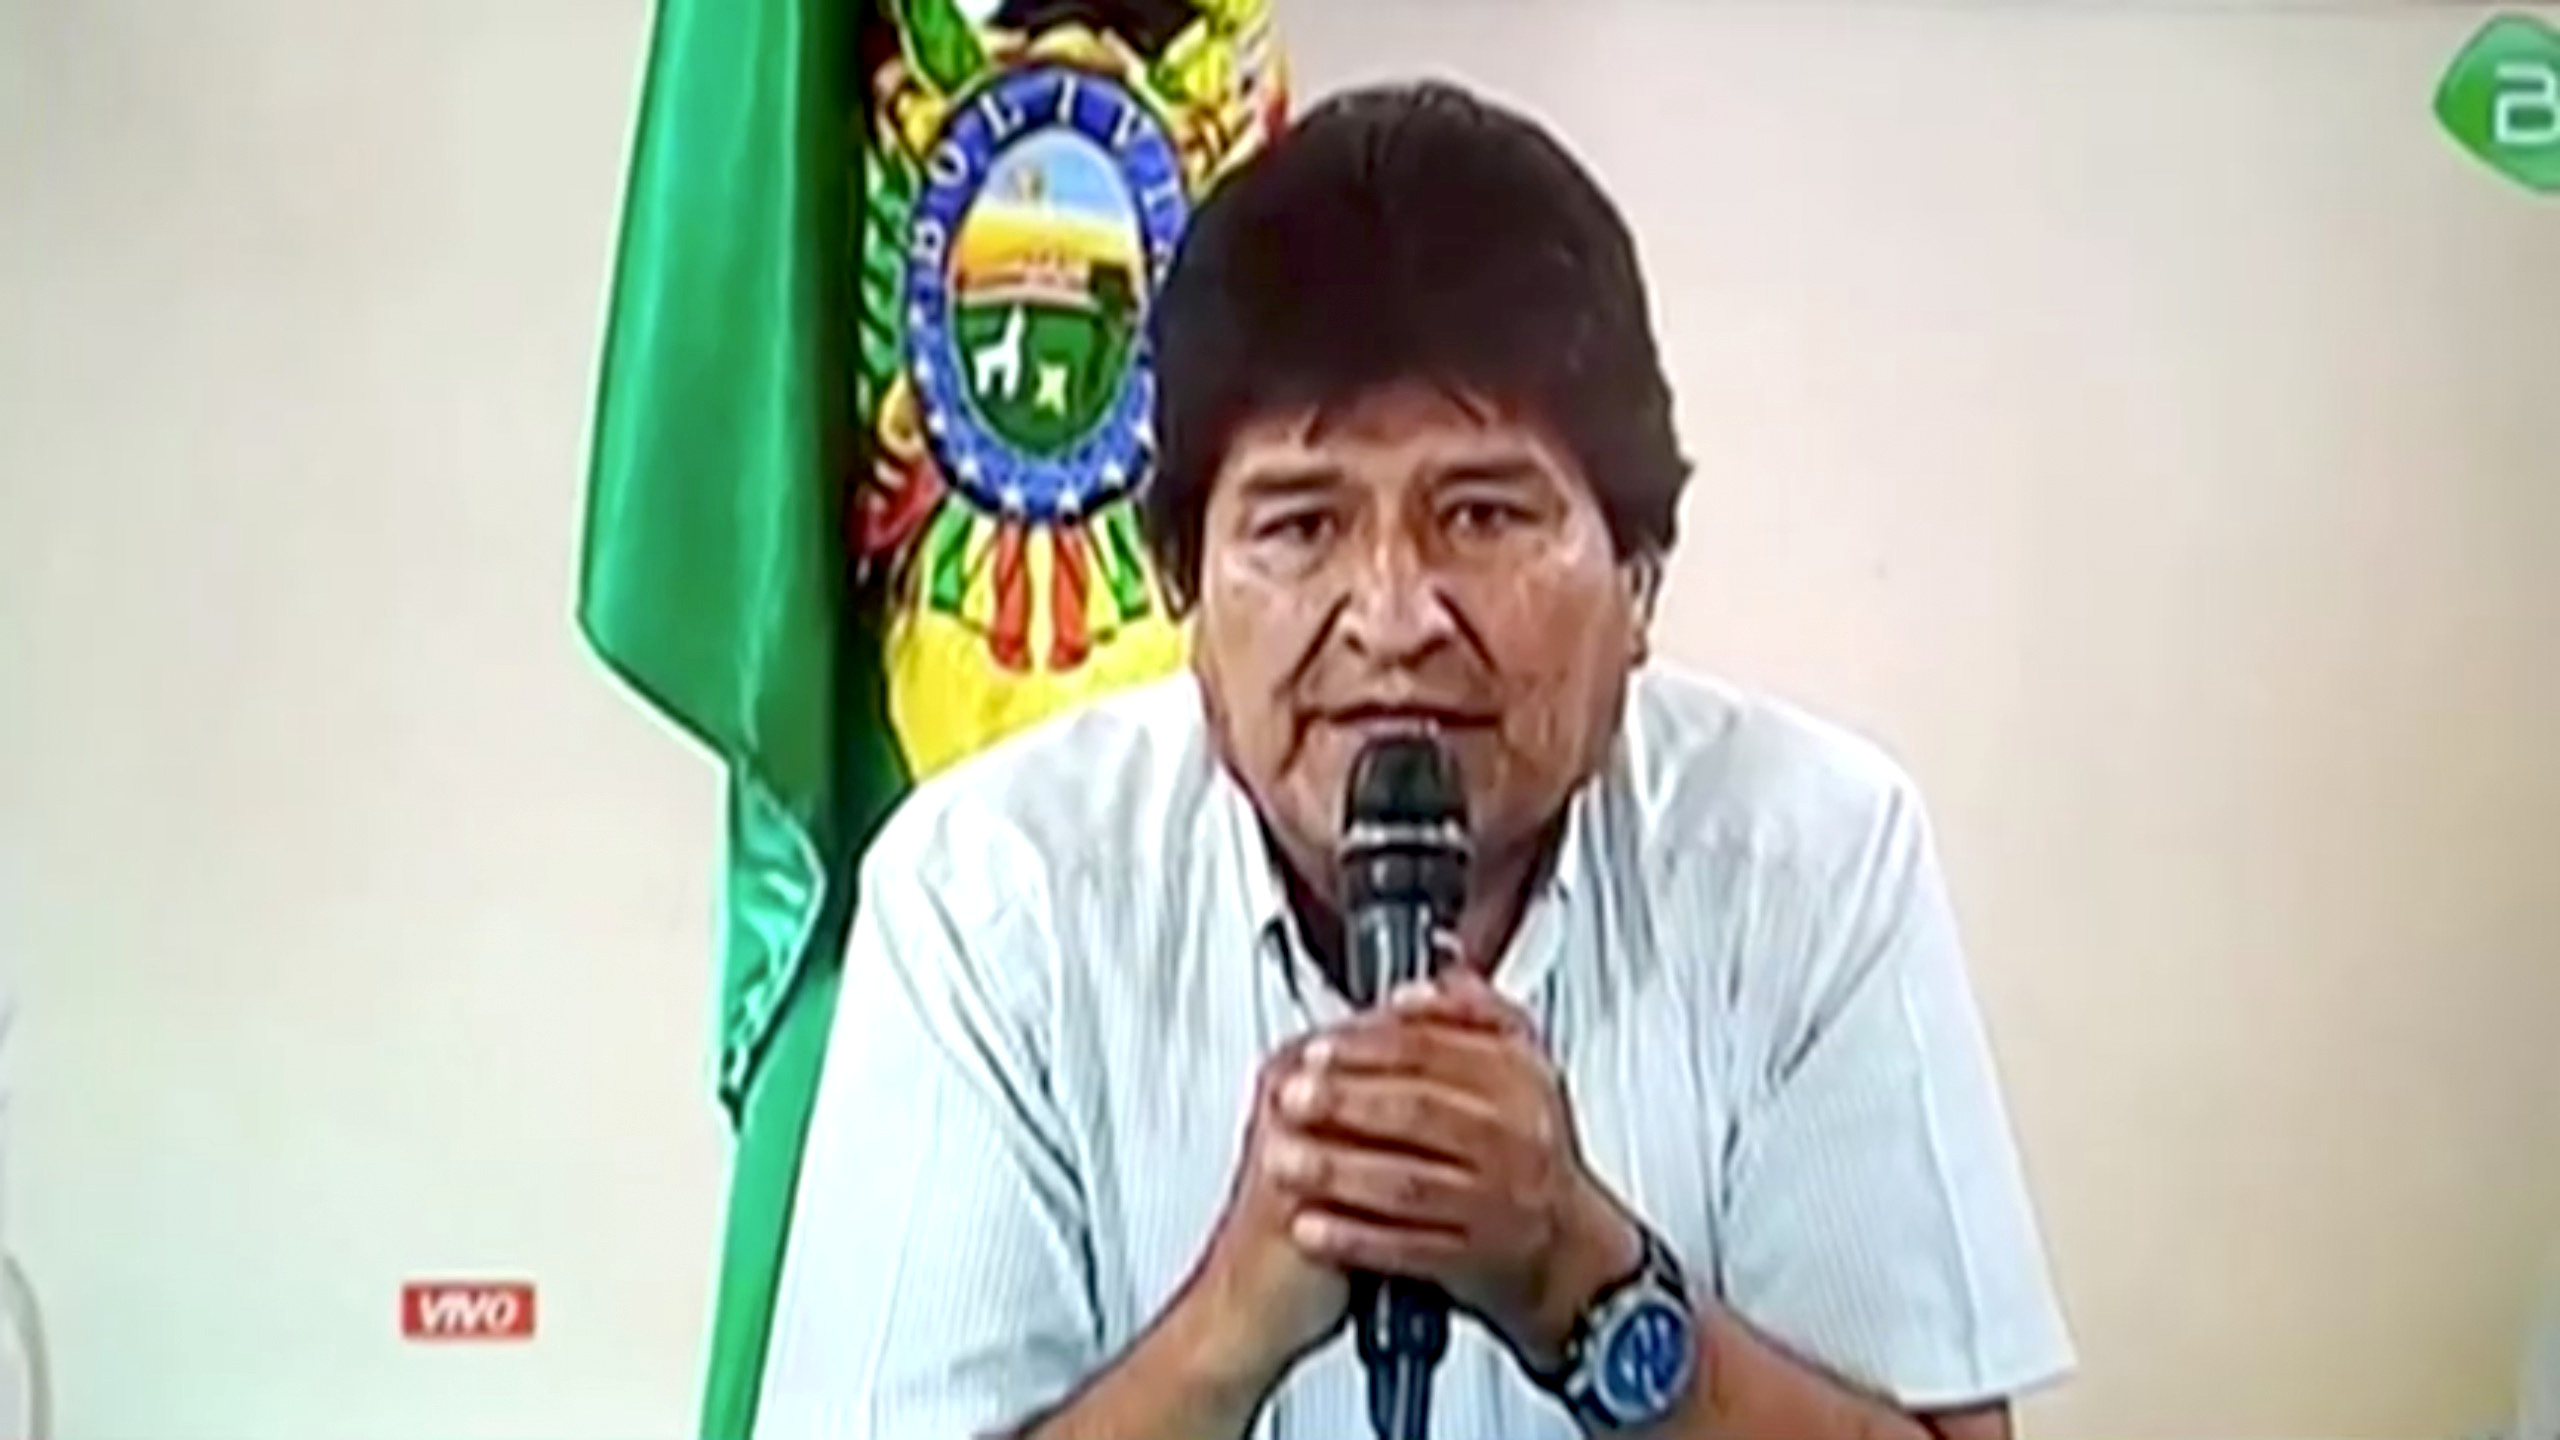 Le président bolivien Evo Morales va quitter ses fonctions, a annoncé dimanche un communiqué diffusé par la télévision. Le chef d'Etat est contesté depuis le 20 octobre, date à laquelle il a été reconduit dans ses fonctions au terme d'un scrutin dont la sincérité est jugée viciée par l'opposition. /Image diffusée le 10 novembre 2019/REUTERS/Bolivian Government TV